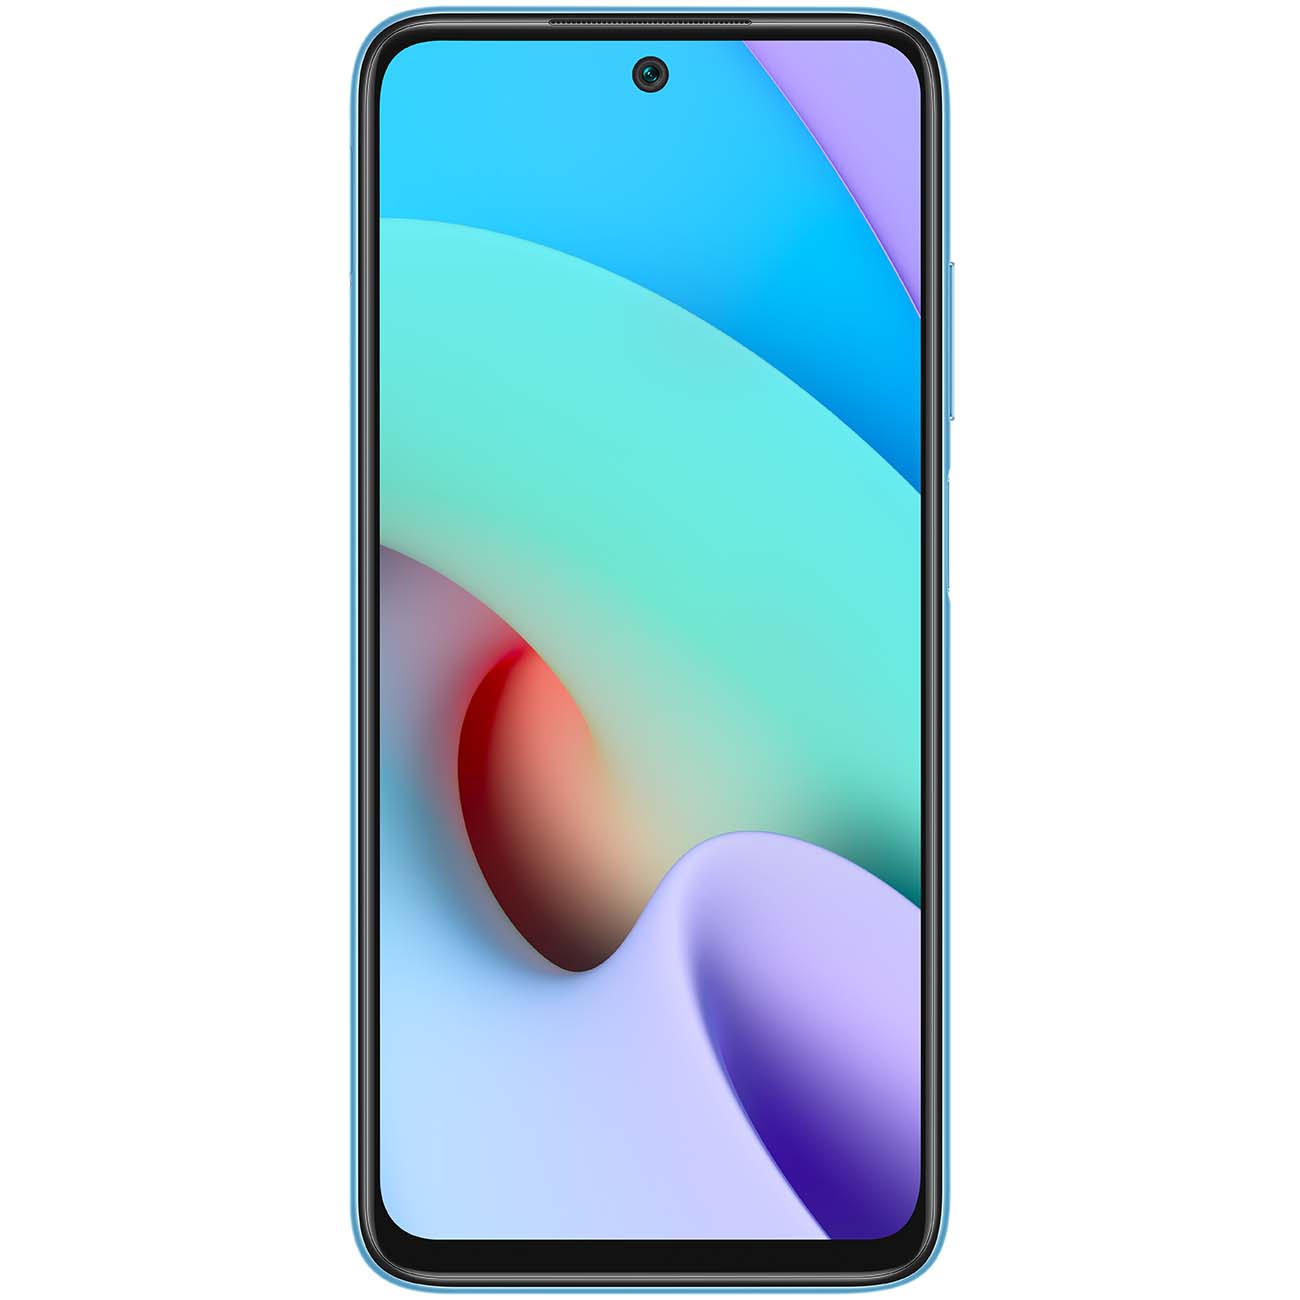 Купить смартфон xiaomi redmi 10 4+64gb sea blue Смартфоны в официальном магазине Apple, Samsung, Xiaomi. iPixel.ru Купить, заказ, кредит, рассрочка, отзывы,  характеристики, цена,  фотографии, в подарок.